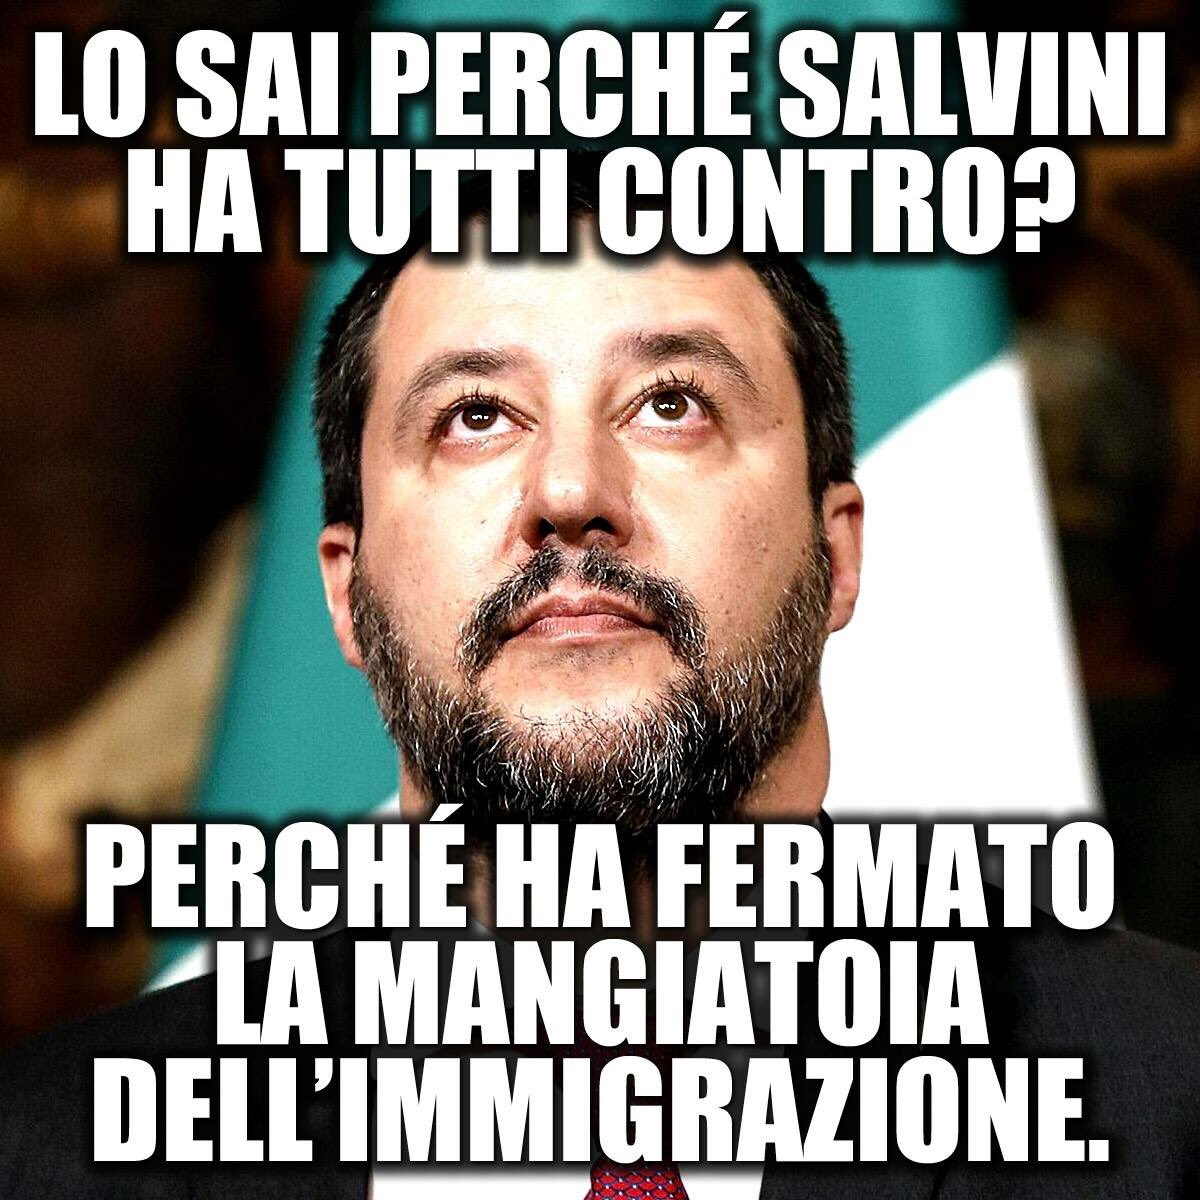 Salvini adesso interpreta il ruolo di agnello sacrificale